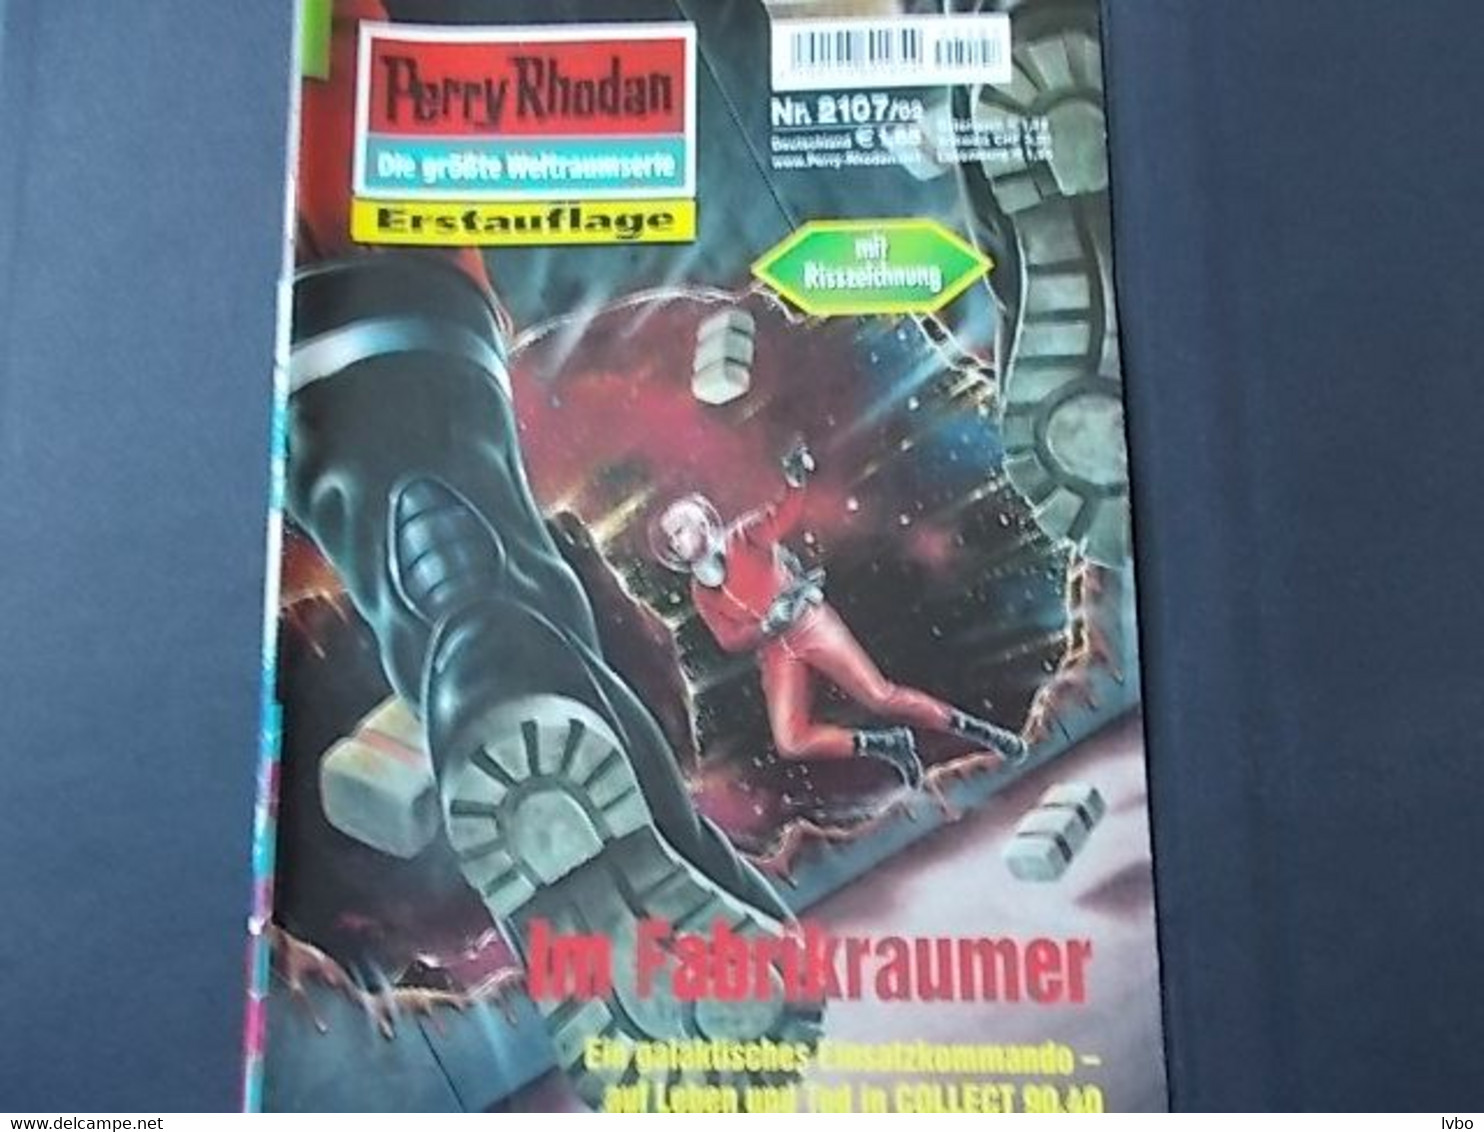 Perry Rhodan Nr 2107 Erstauflage Im Fabrikraumer - Fantascienza